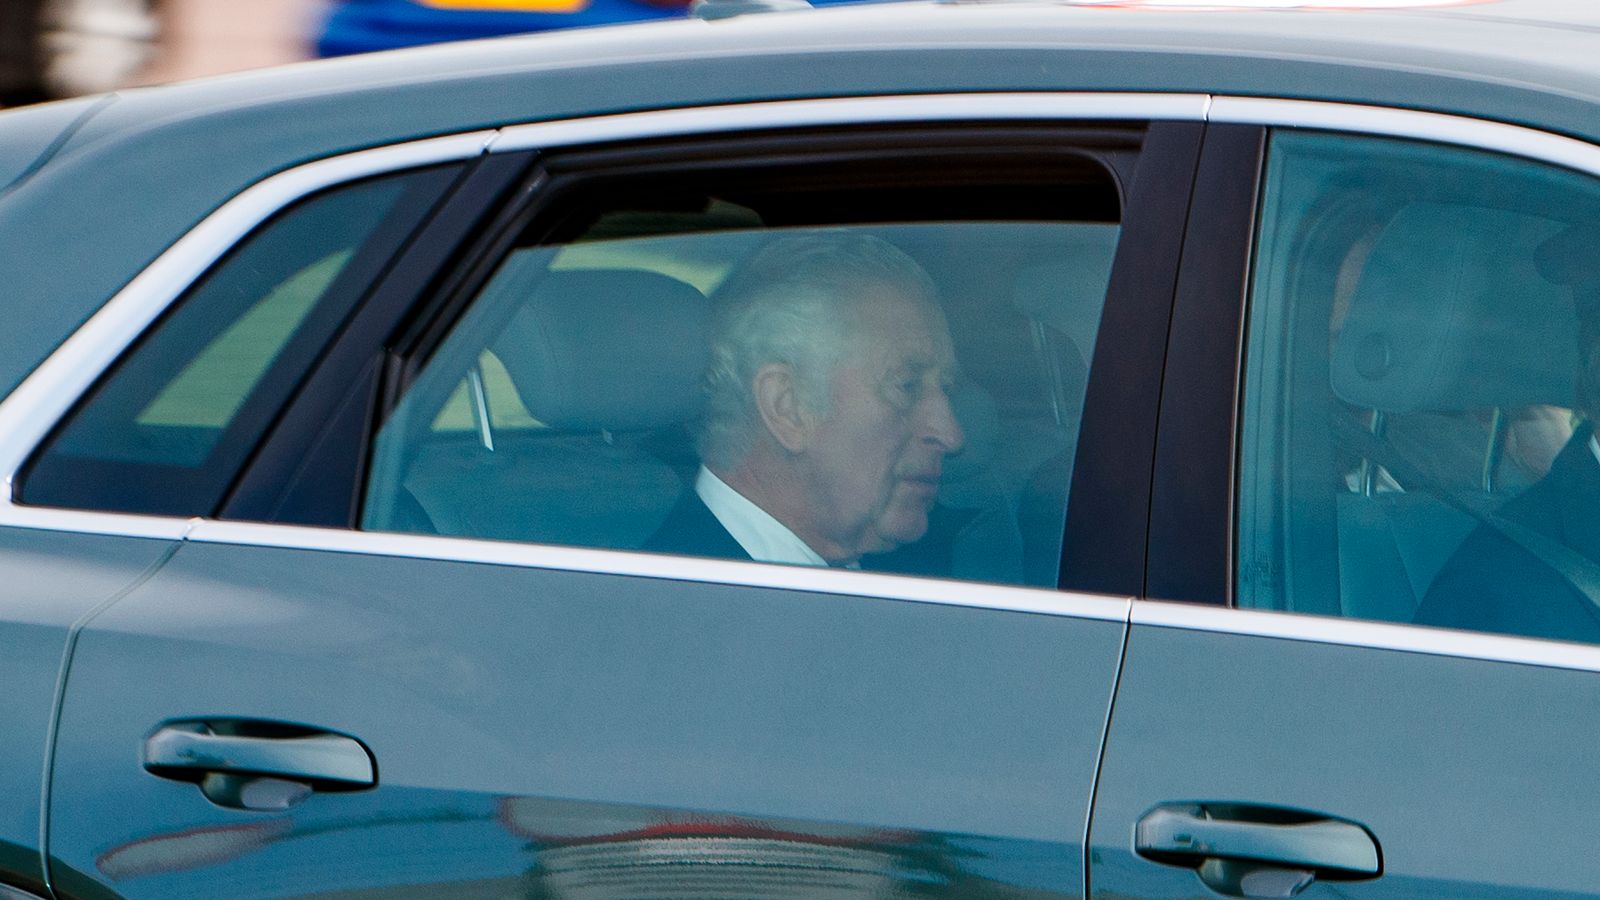 طار الملك تشارلز إلى اسكتلندا بعد جنازة الملكة  أخبار المملكة المتحدة